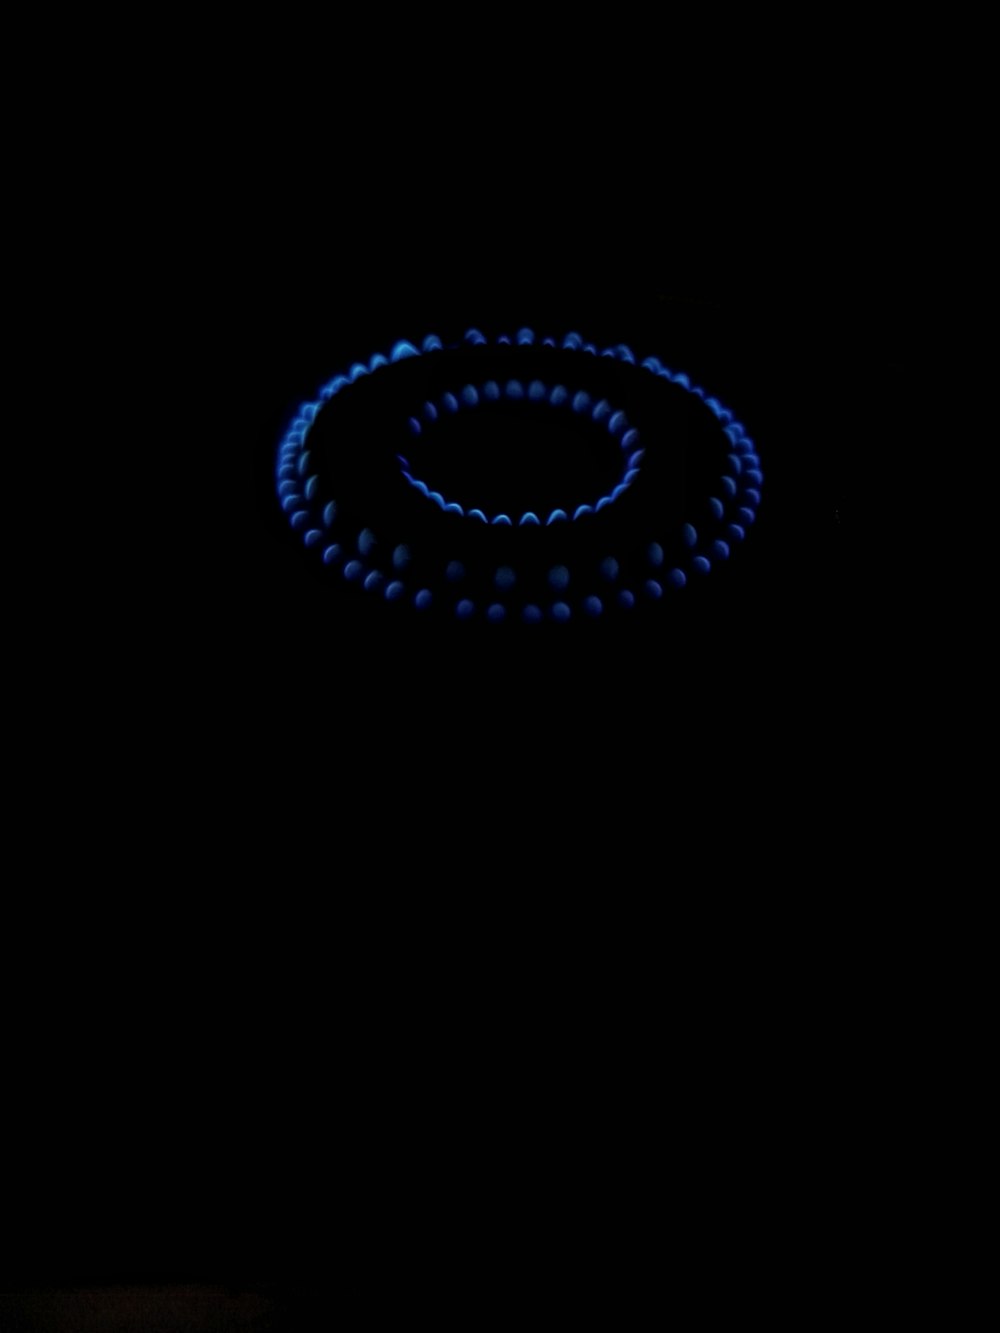 un fond noir avec un anneau bleu au milieu